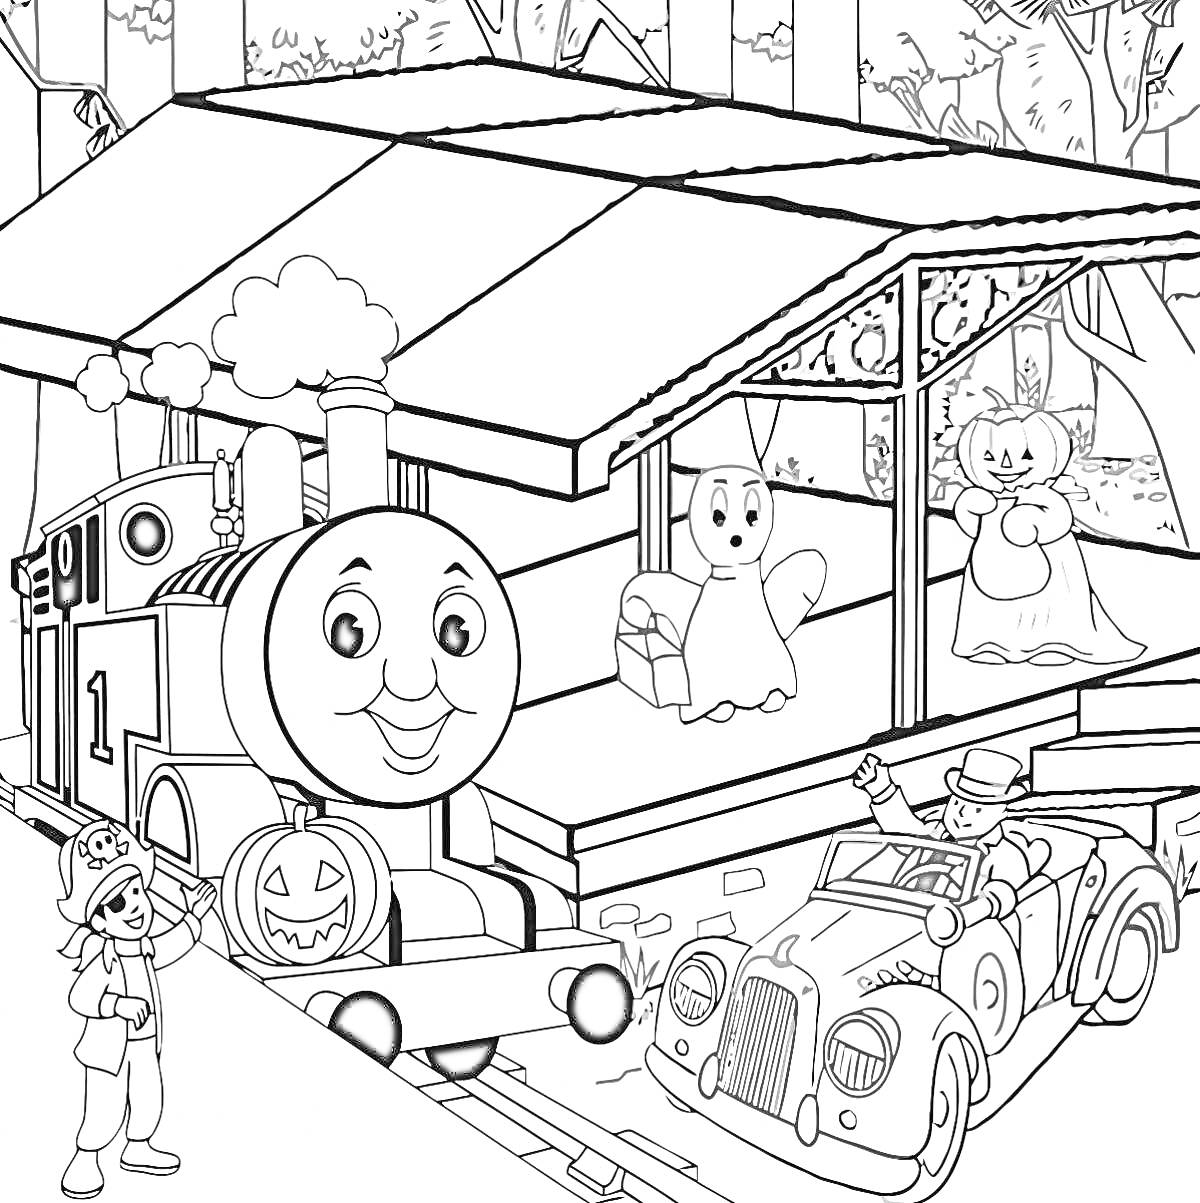 РаскраскаПаровозик Томас на вокзале с Хэллоуиновыми персонажами